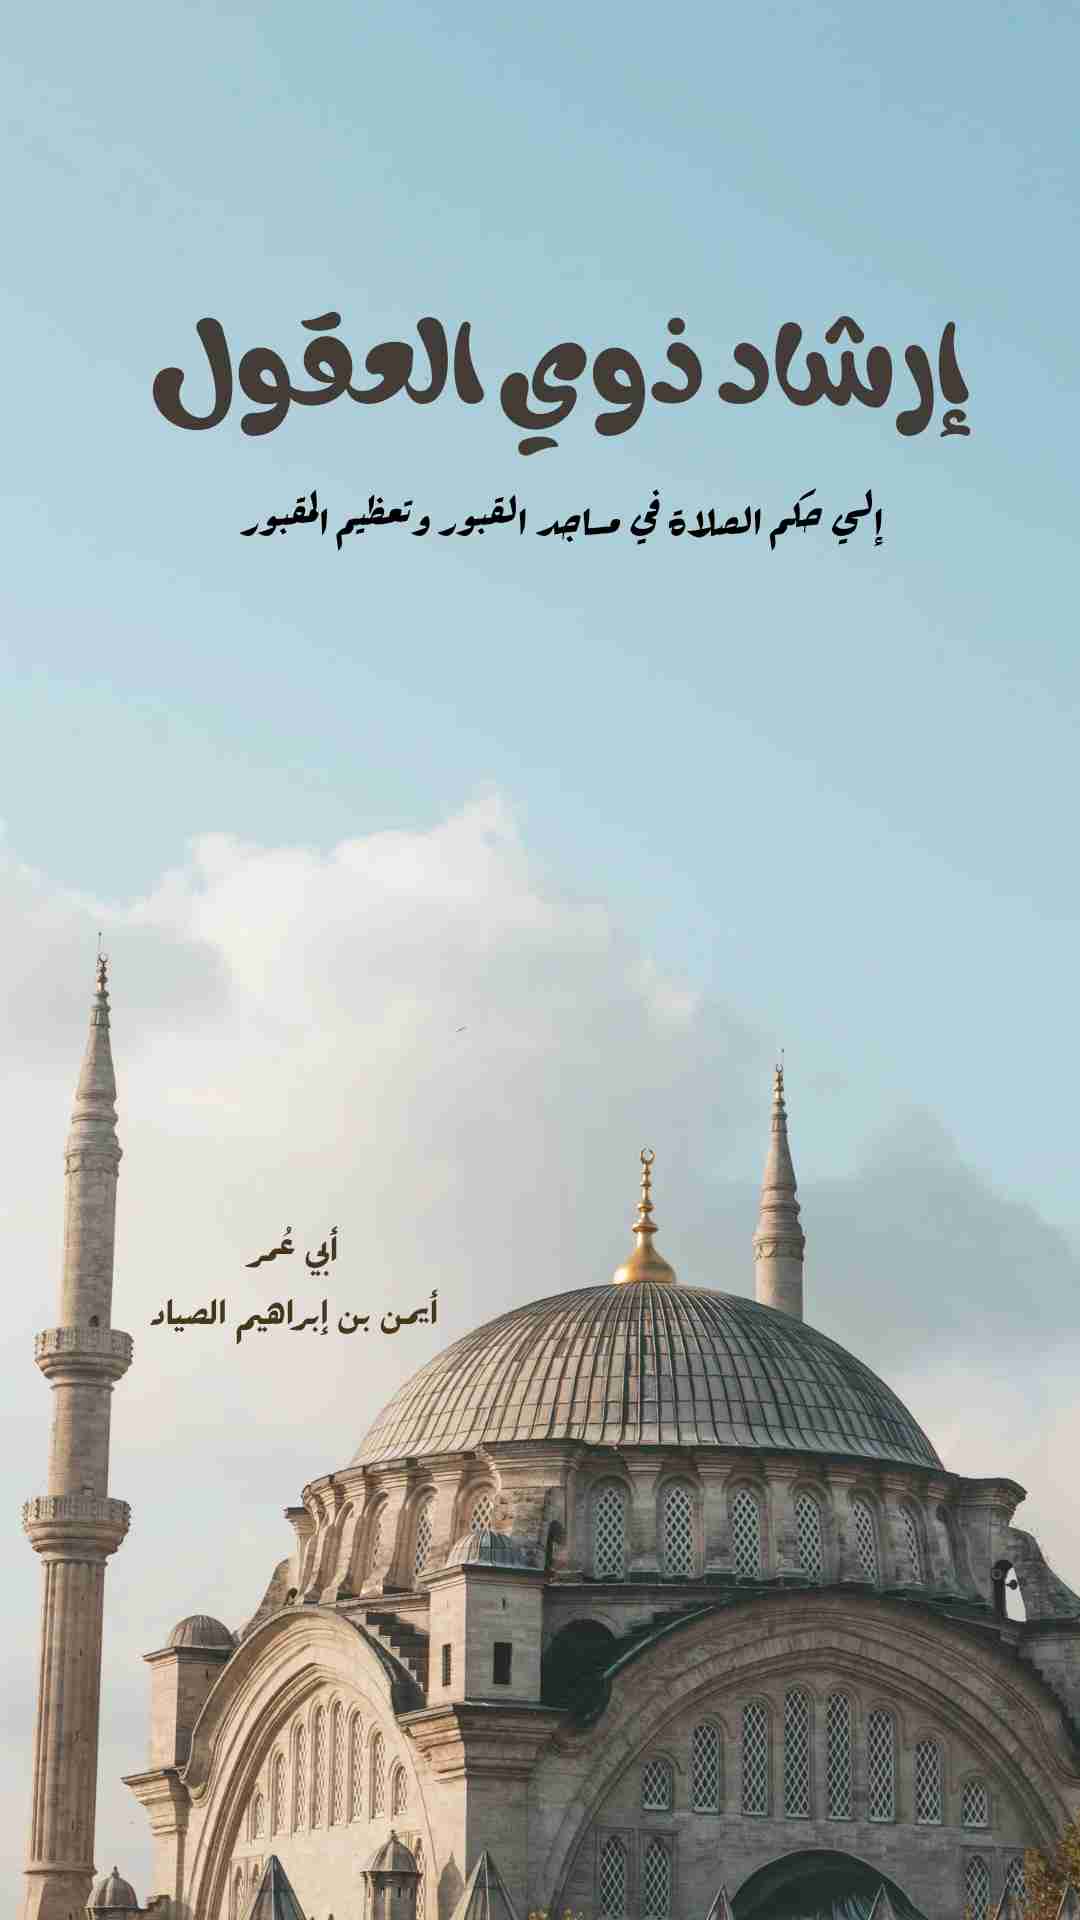 تحميل كتاب إرشاد ذوي العقول إلى حكم الصلاة في مساجد القبور وتعظيم المقبور pdf أيمن بن إبراهيم الصياد